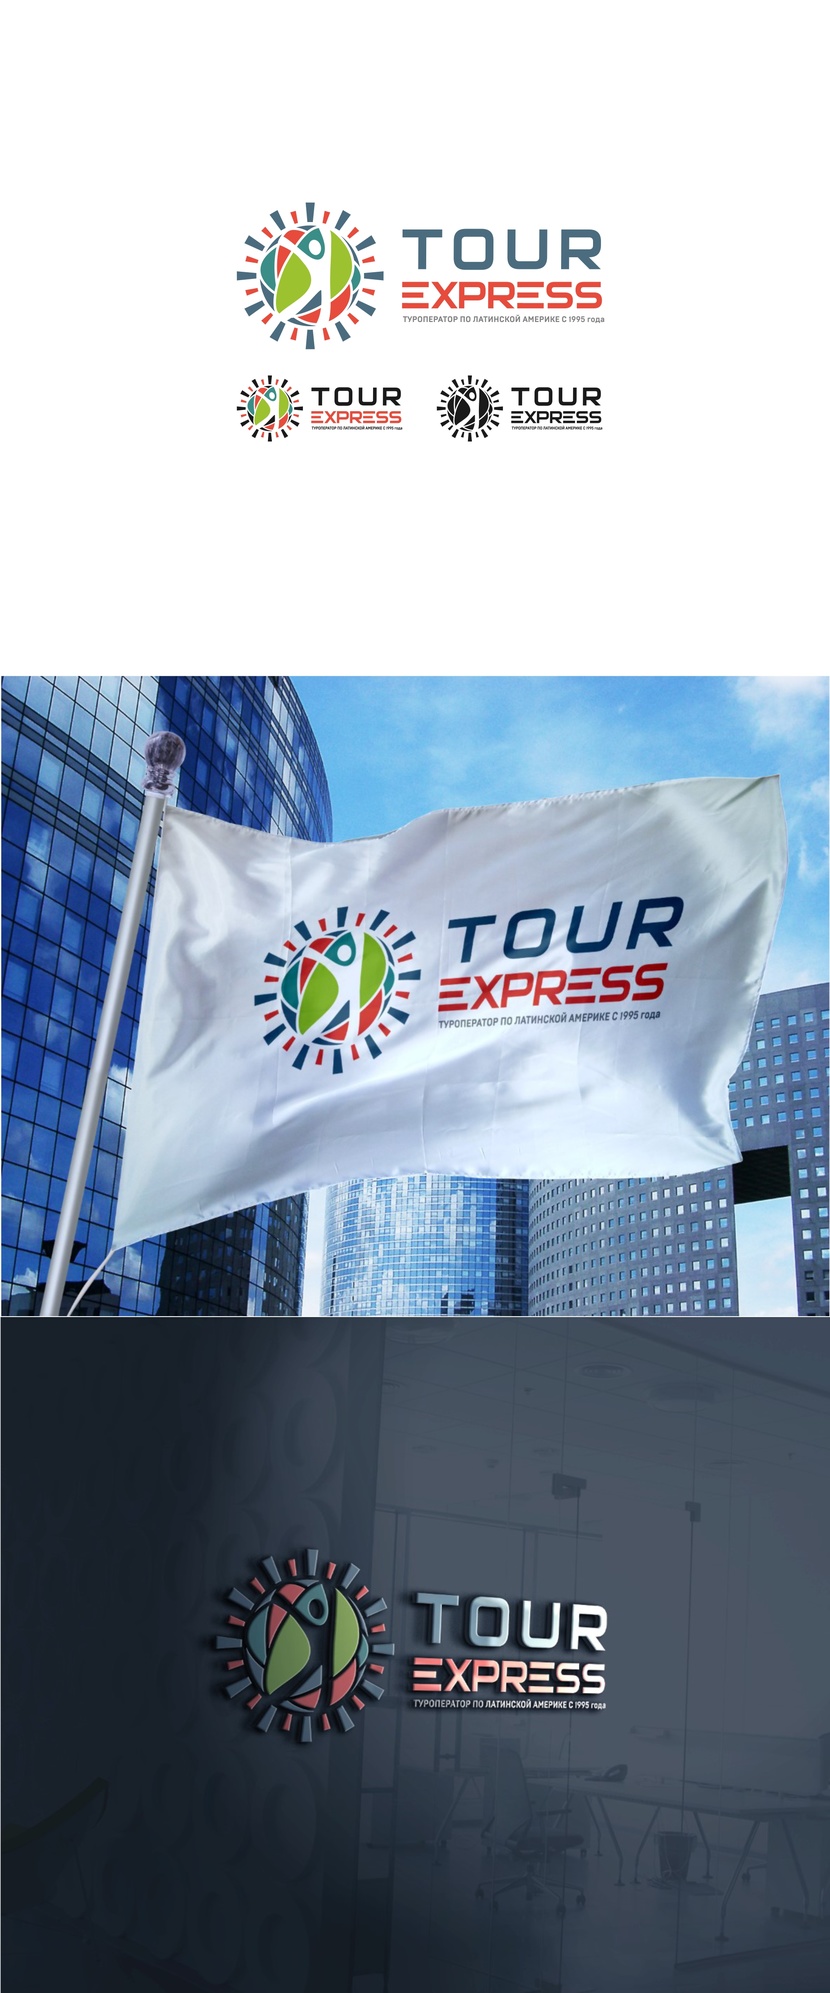 11 - Ребрендинг TOUR EXPRESS